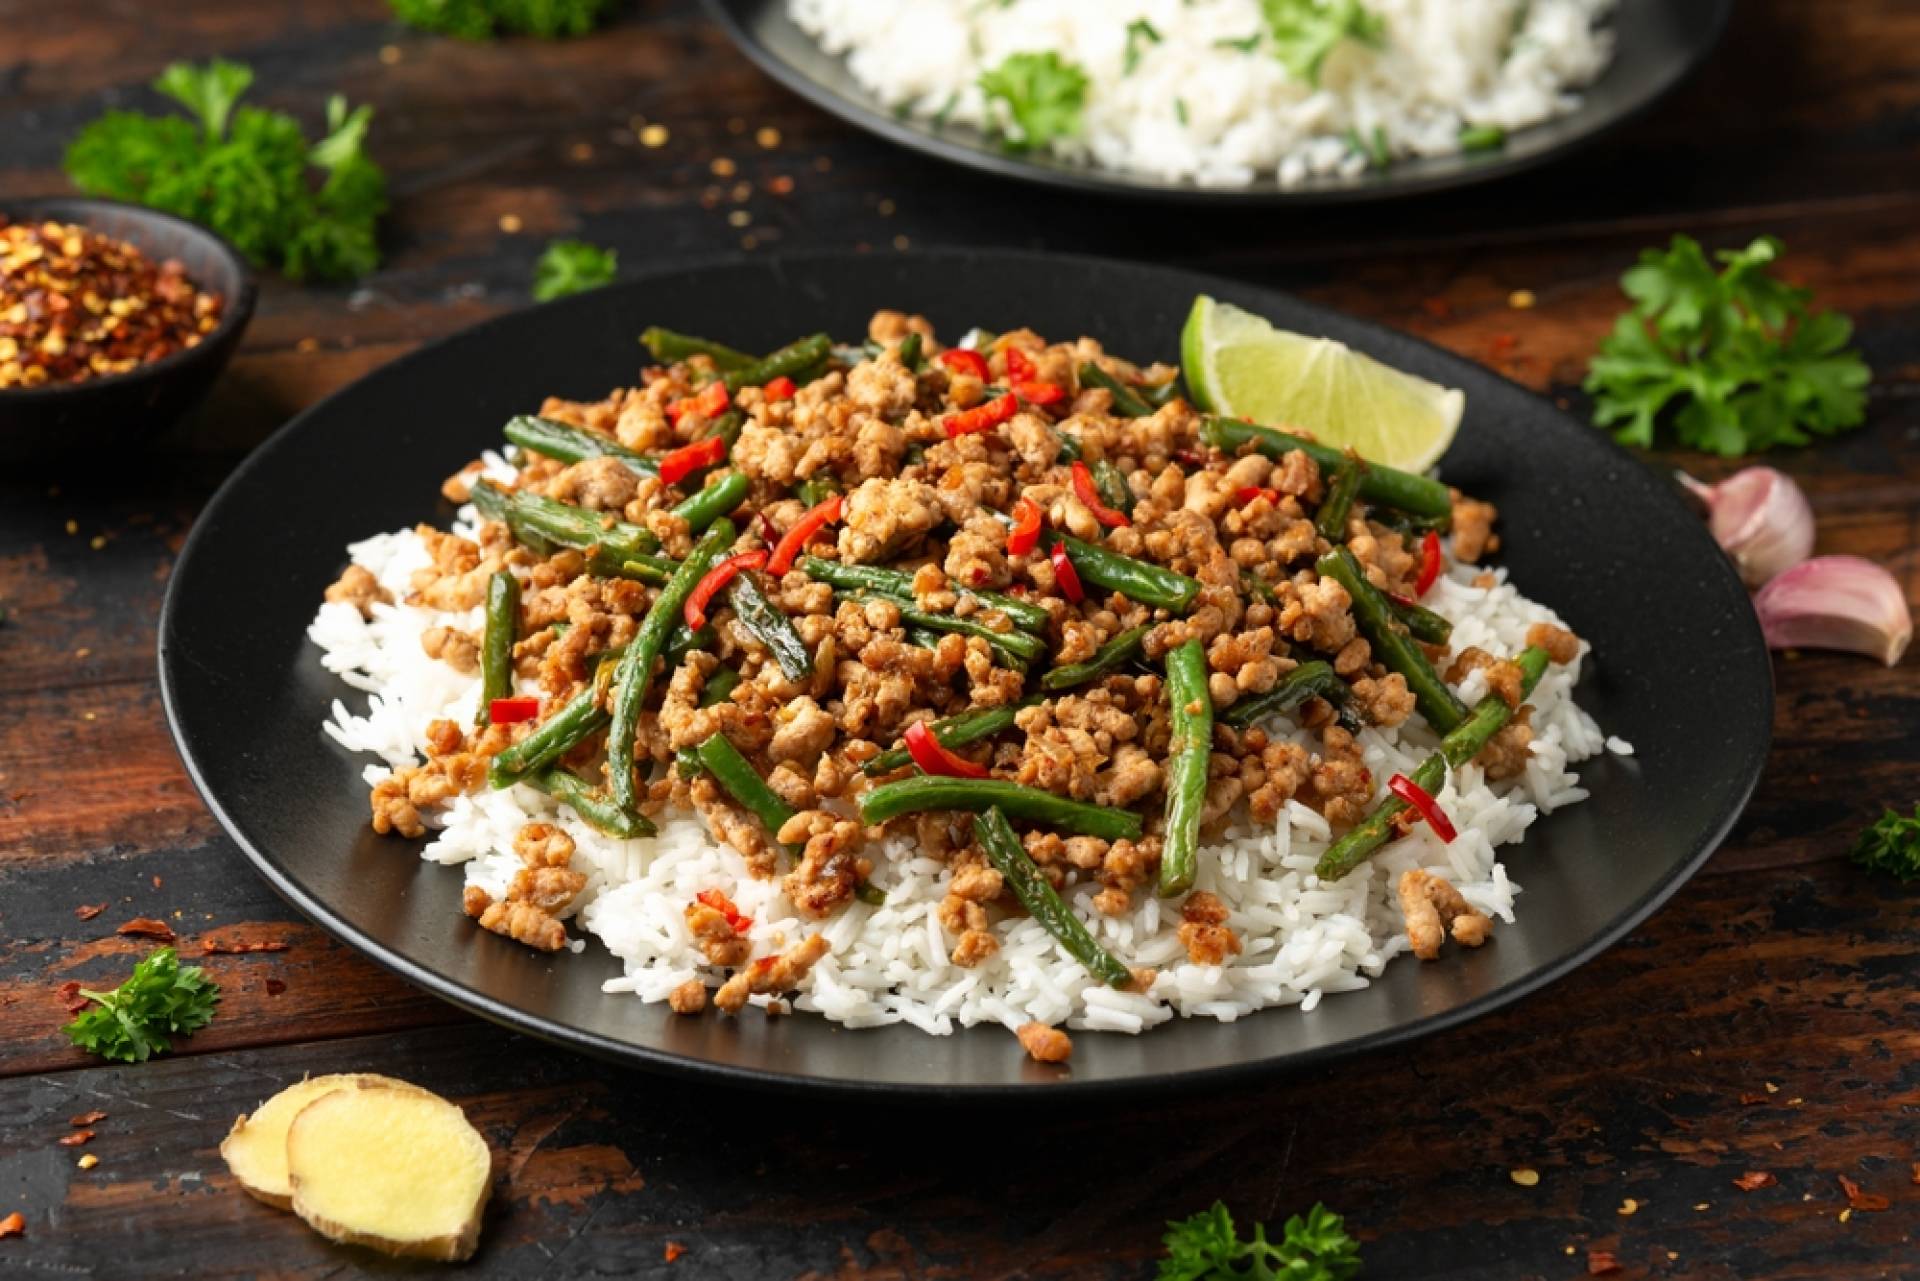 Asian Pork & Green Bean Saute over Rice